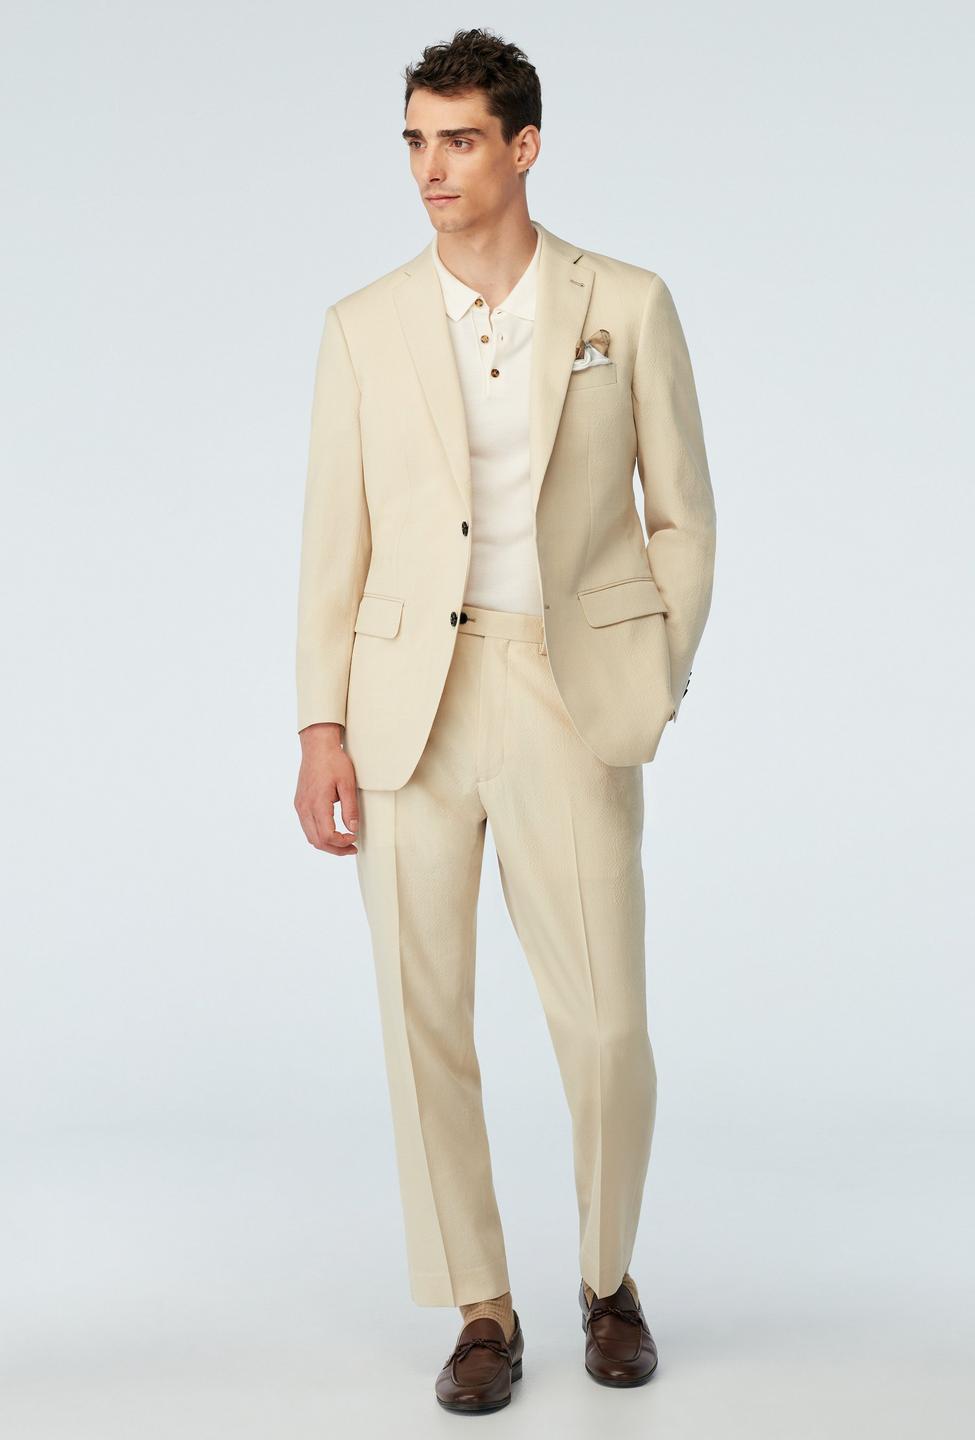 Stapleford Seersucker Cream Suit